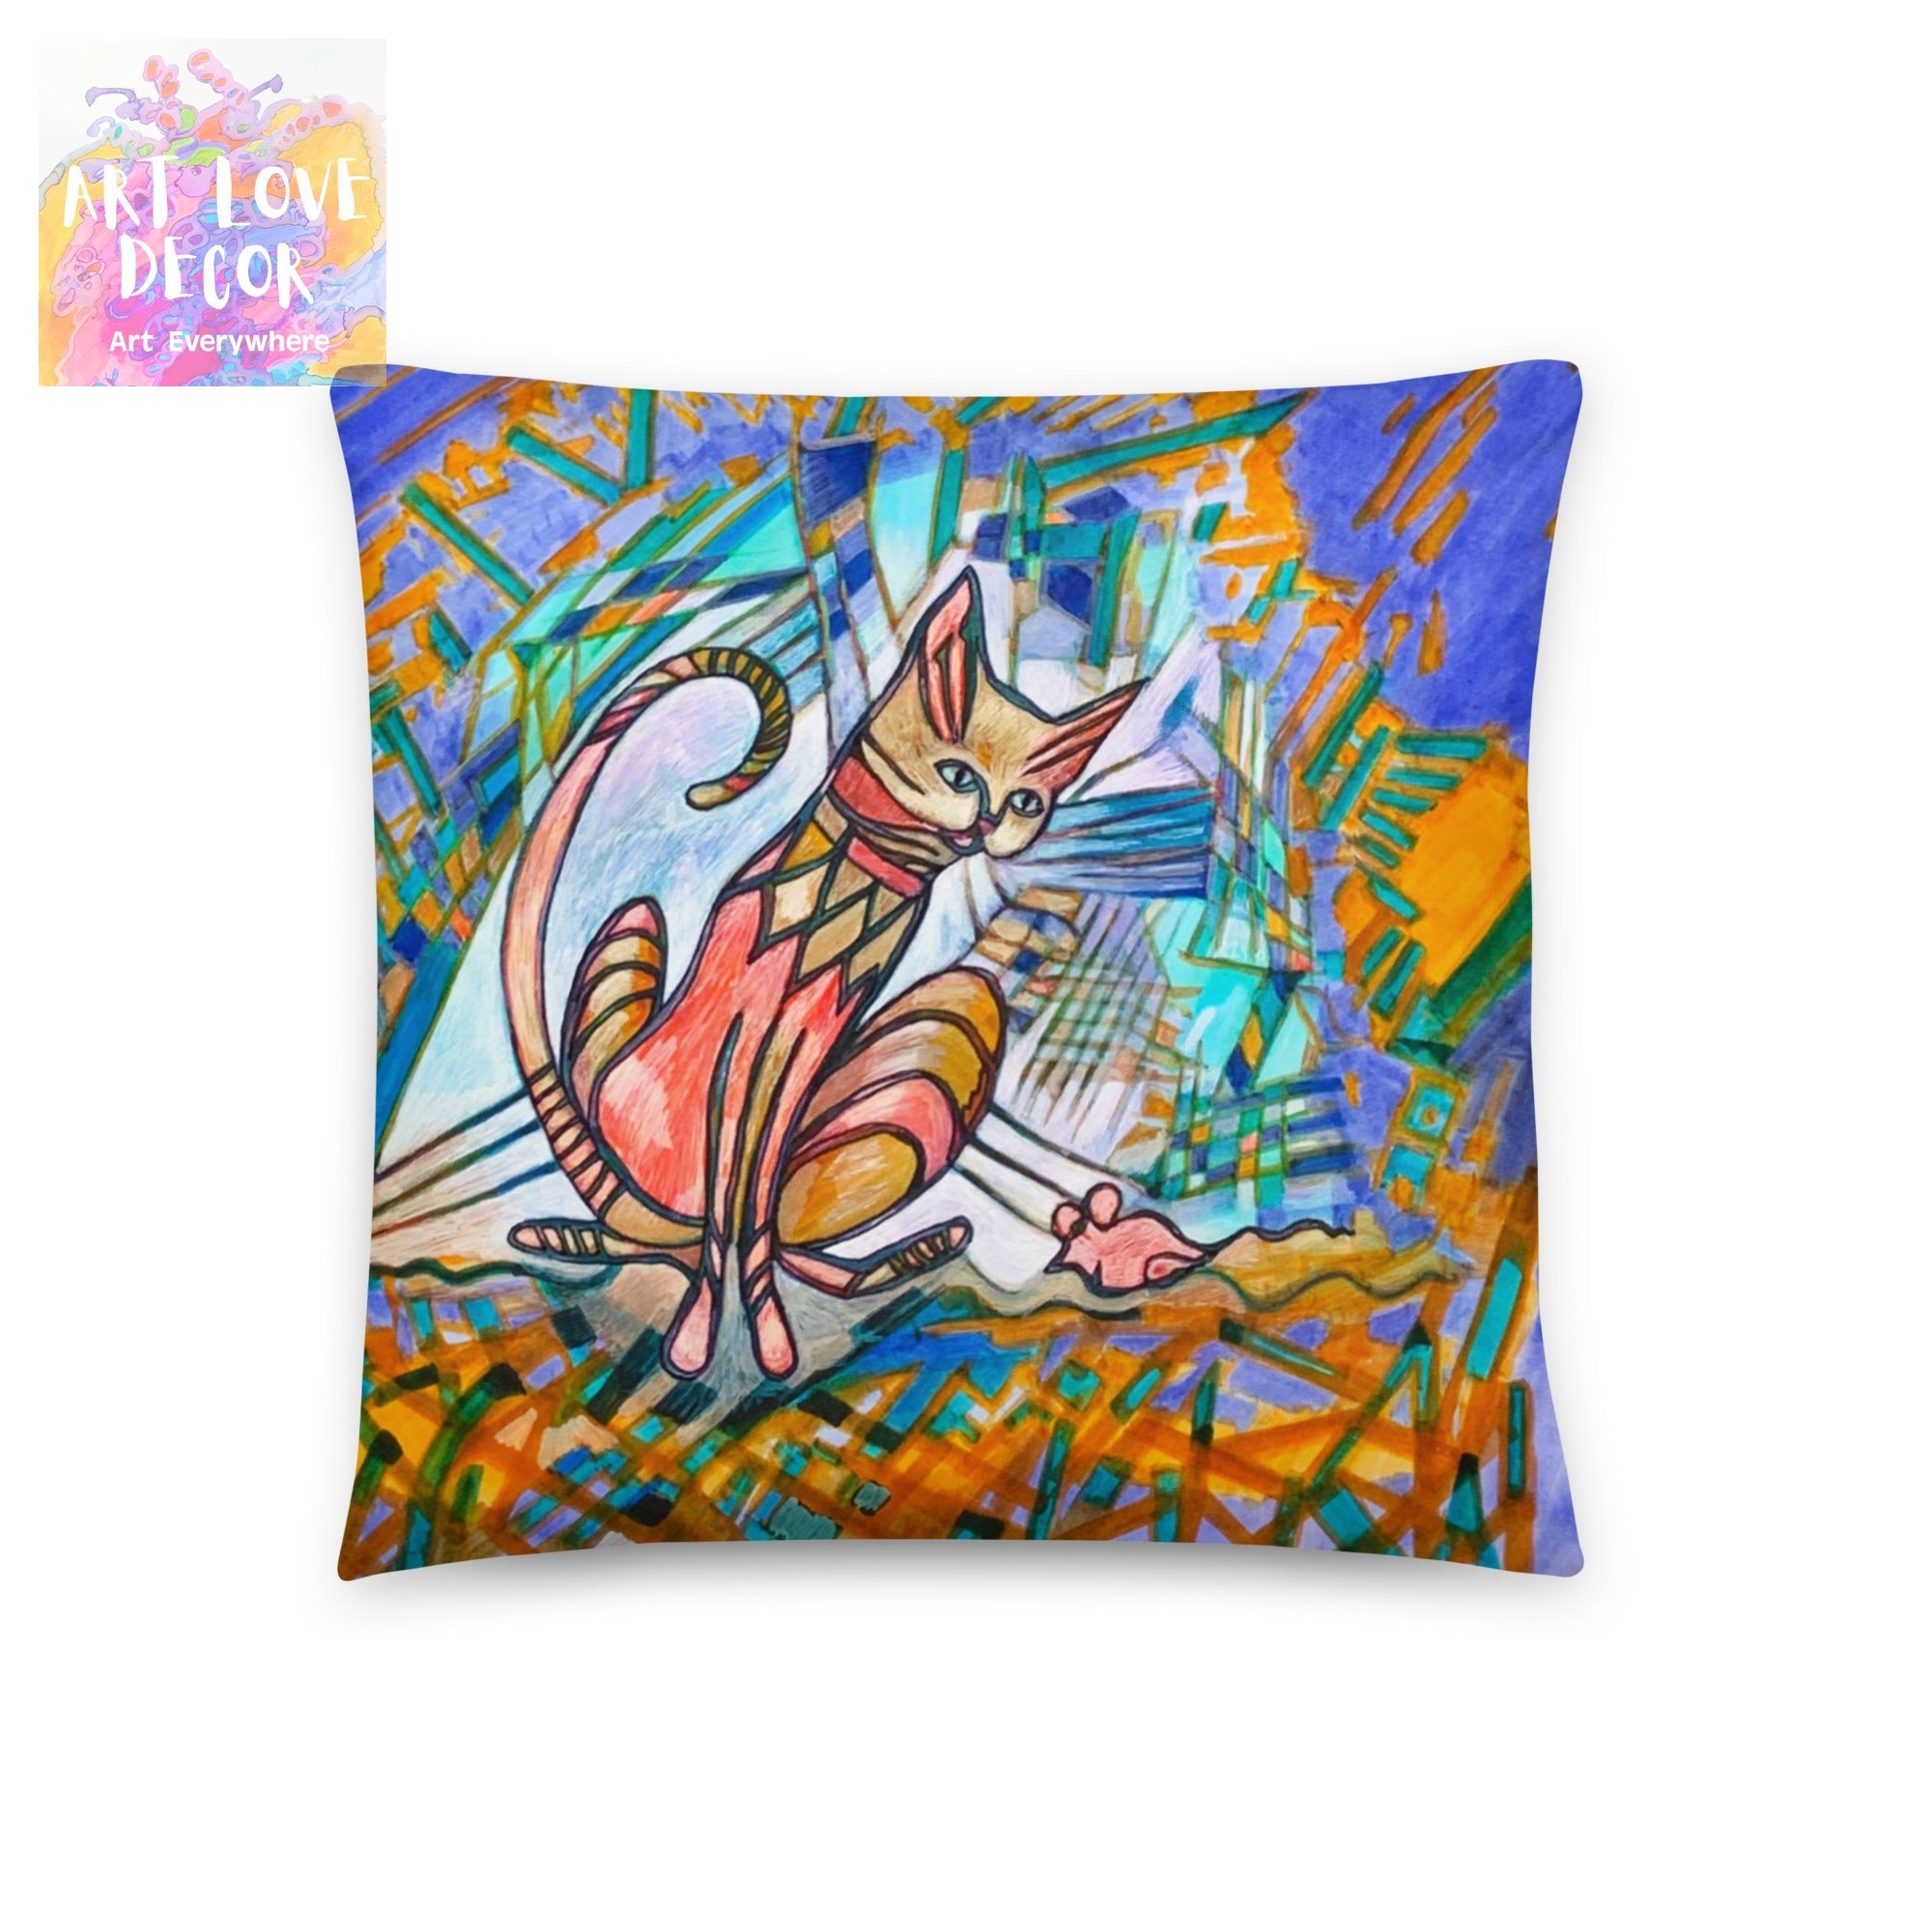 Mouser Cat Pillow - Art Love Decor